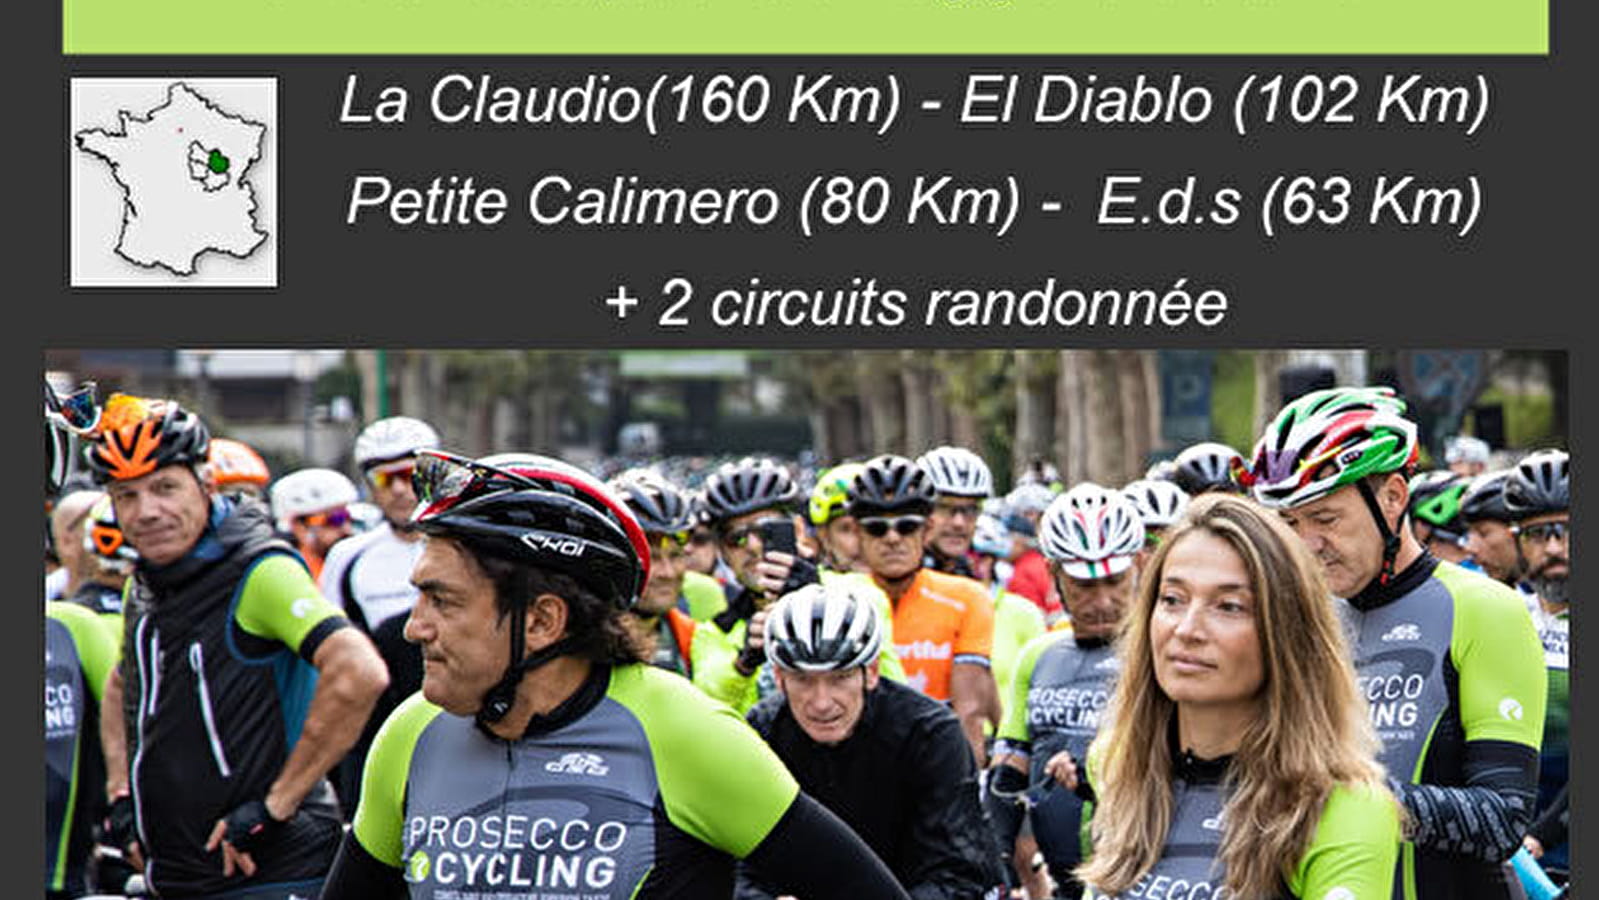 Cyclosportief La Claudio Chiappucci